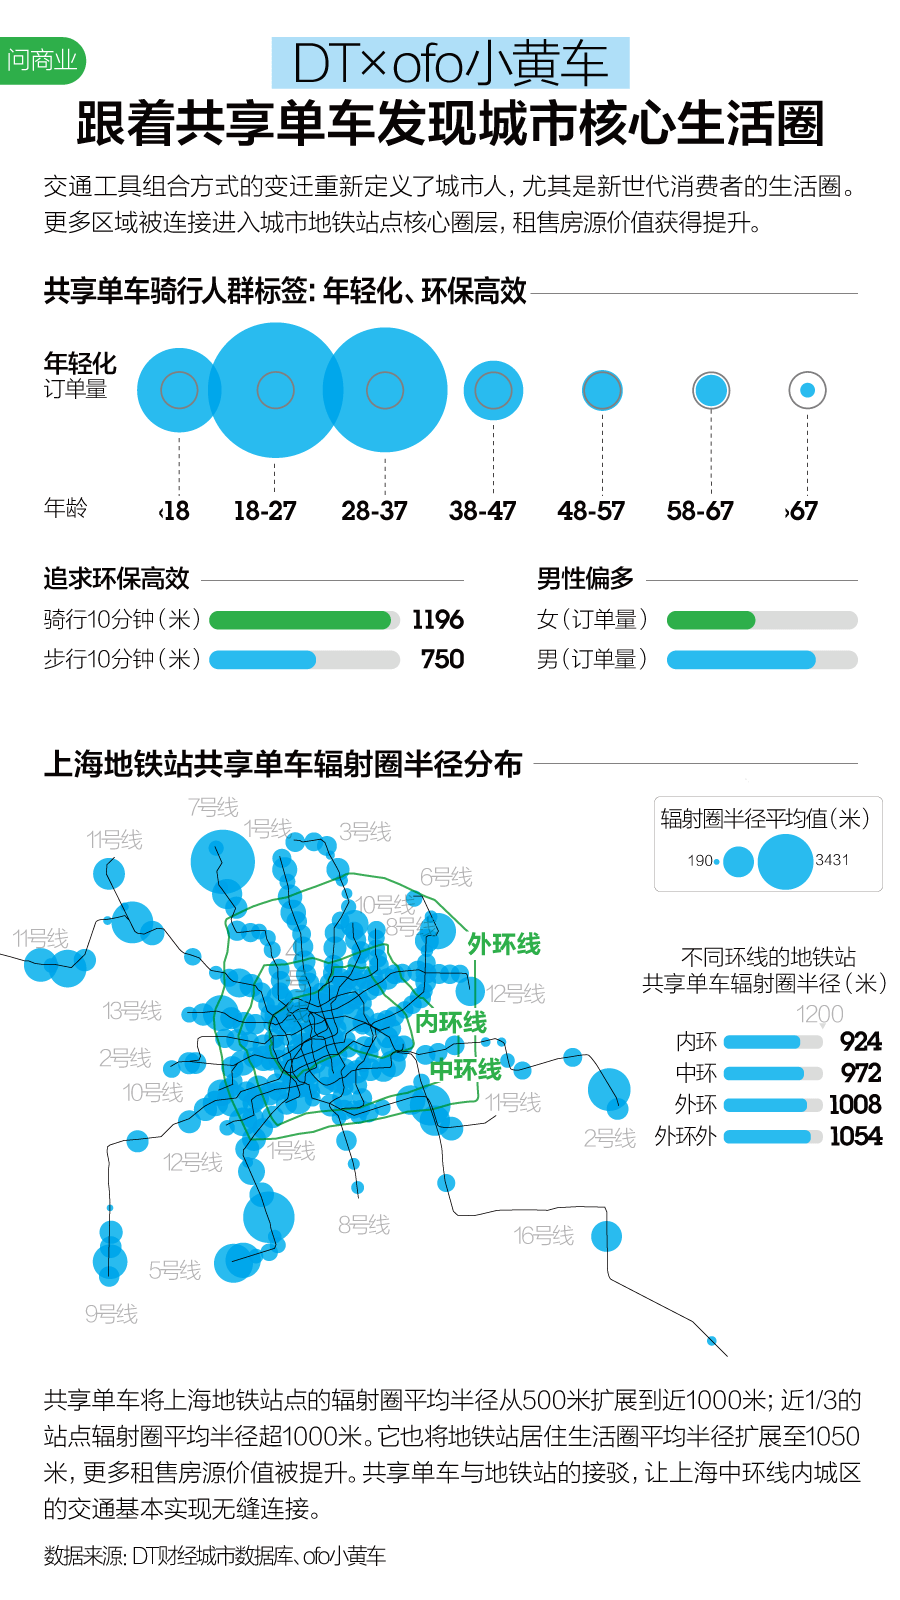 上海城市大数据活跃报告_上海数据分析网